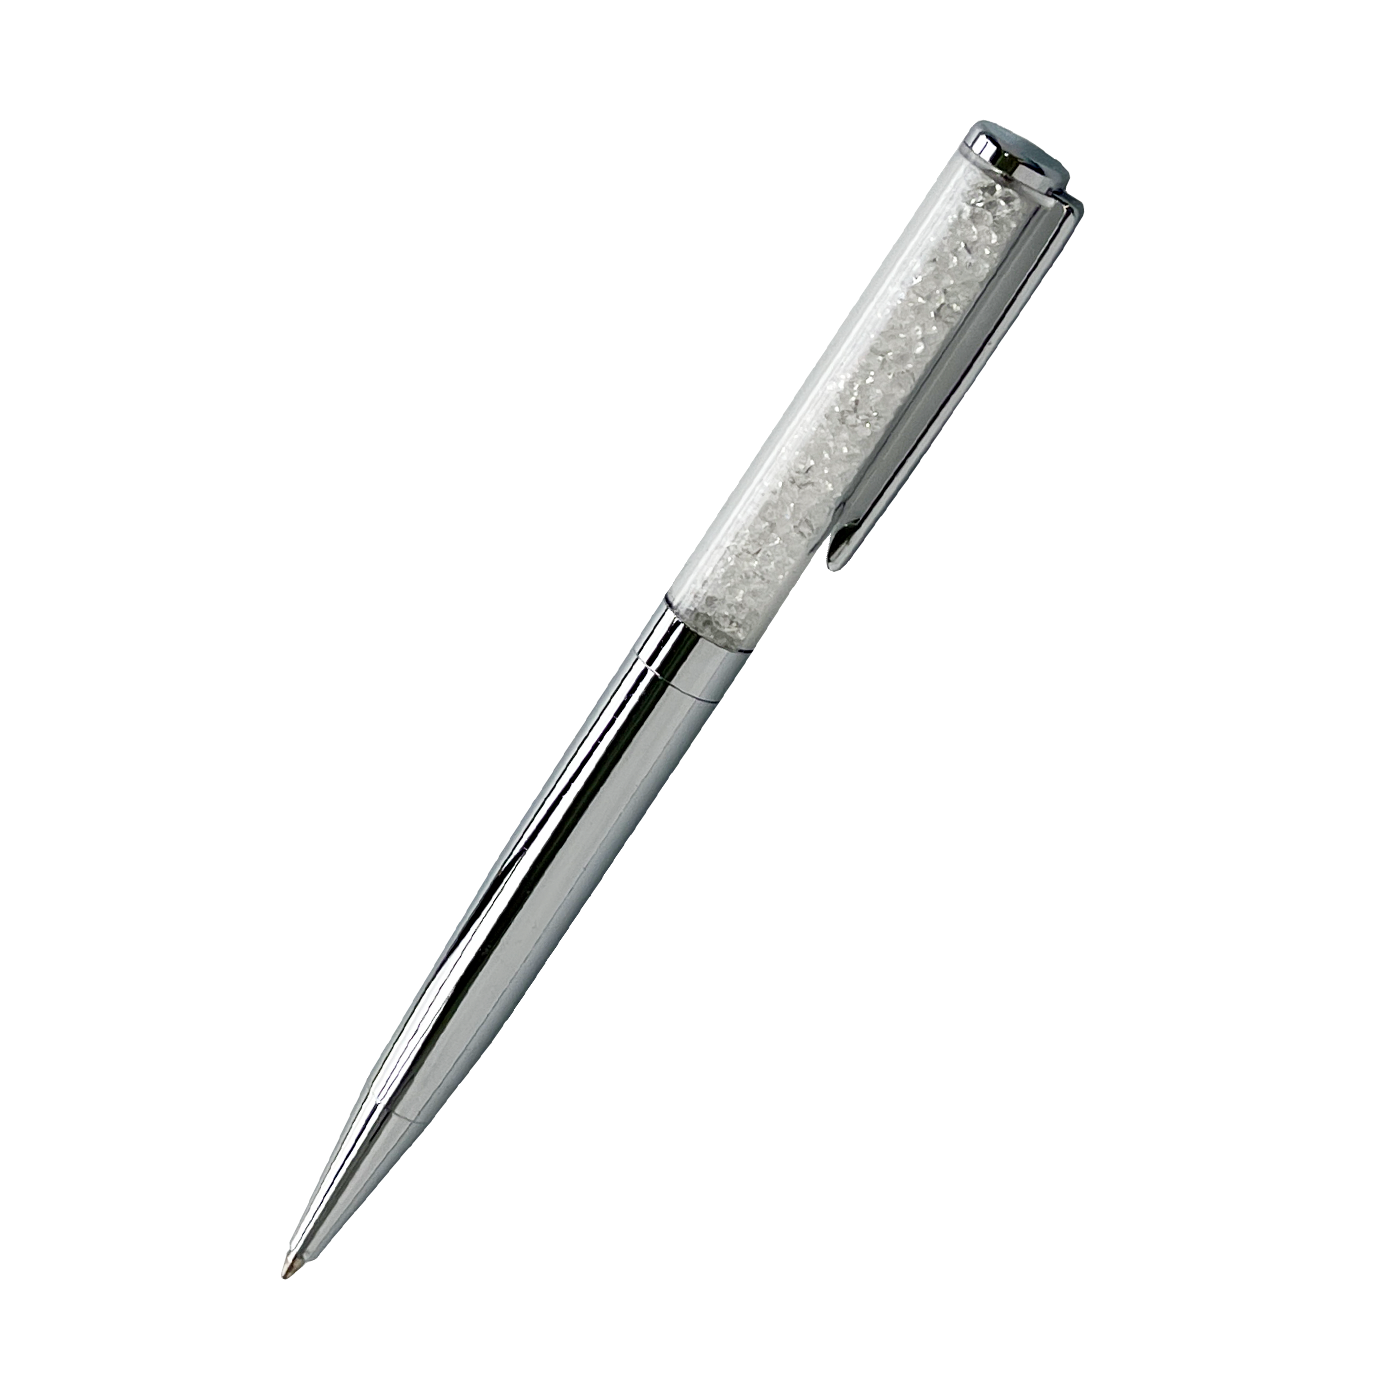 Sparkle Ballpoint Pen (Silver)